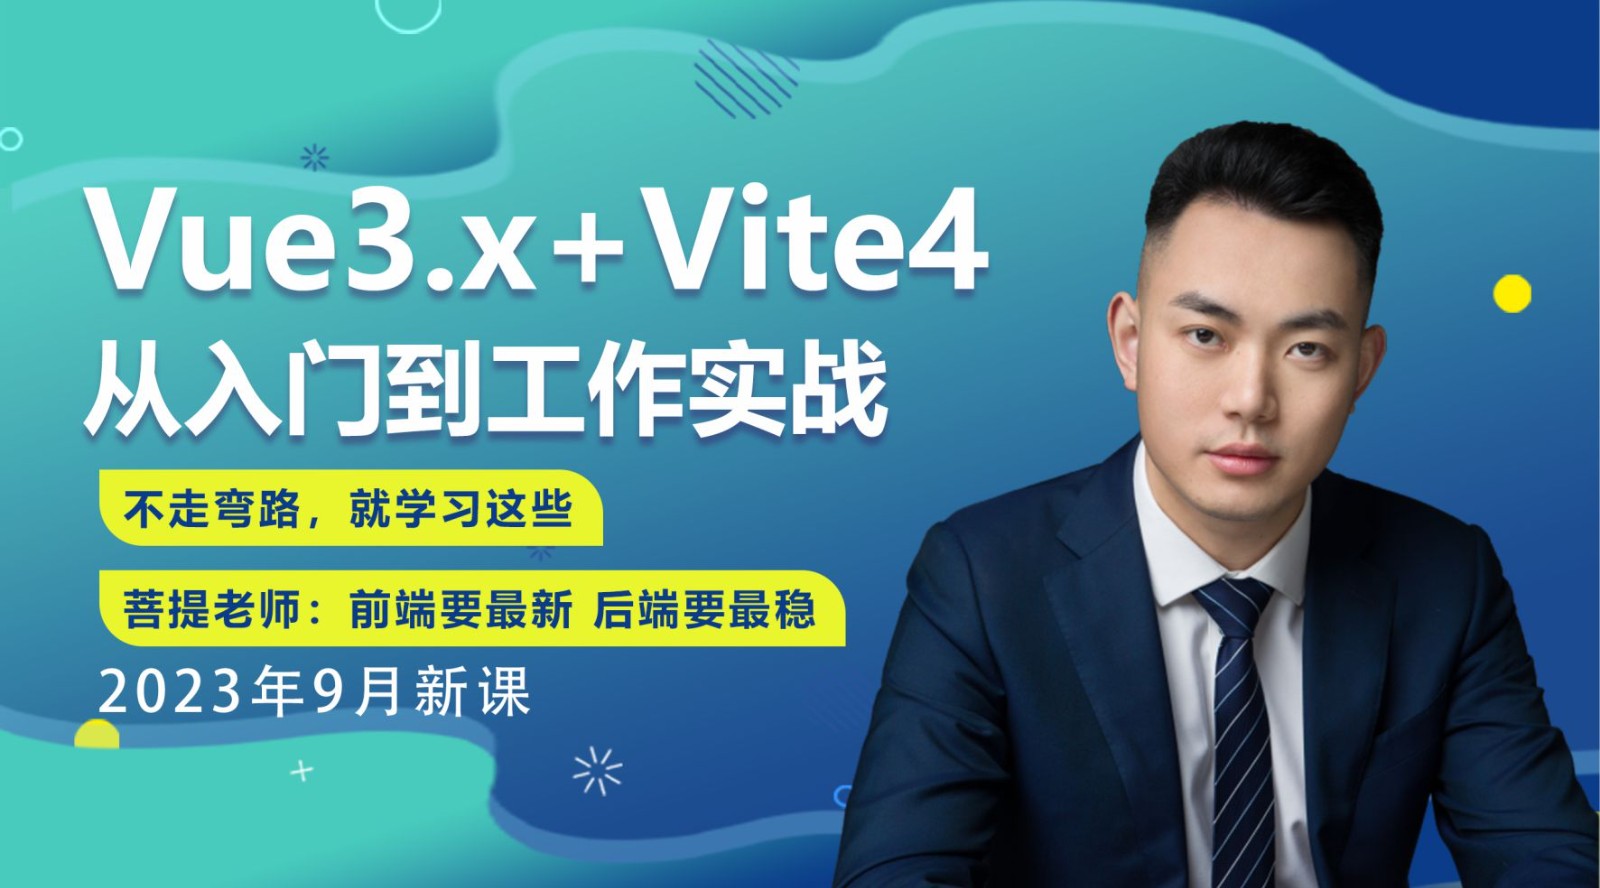 【2023-9月上新版】Vue3.x+Vite4从入门到实际工作